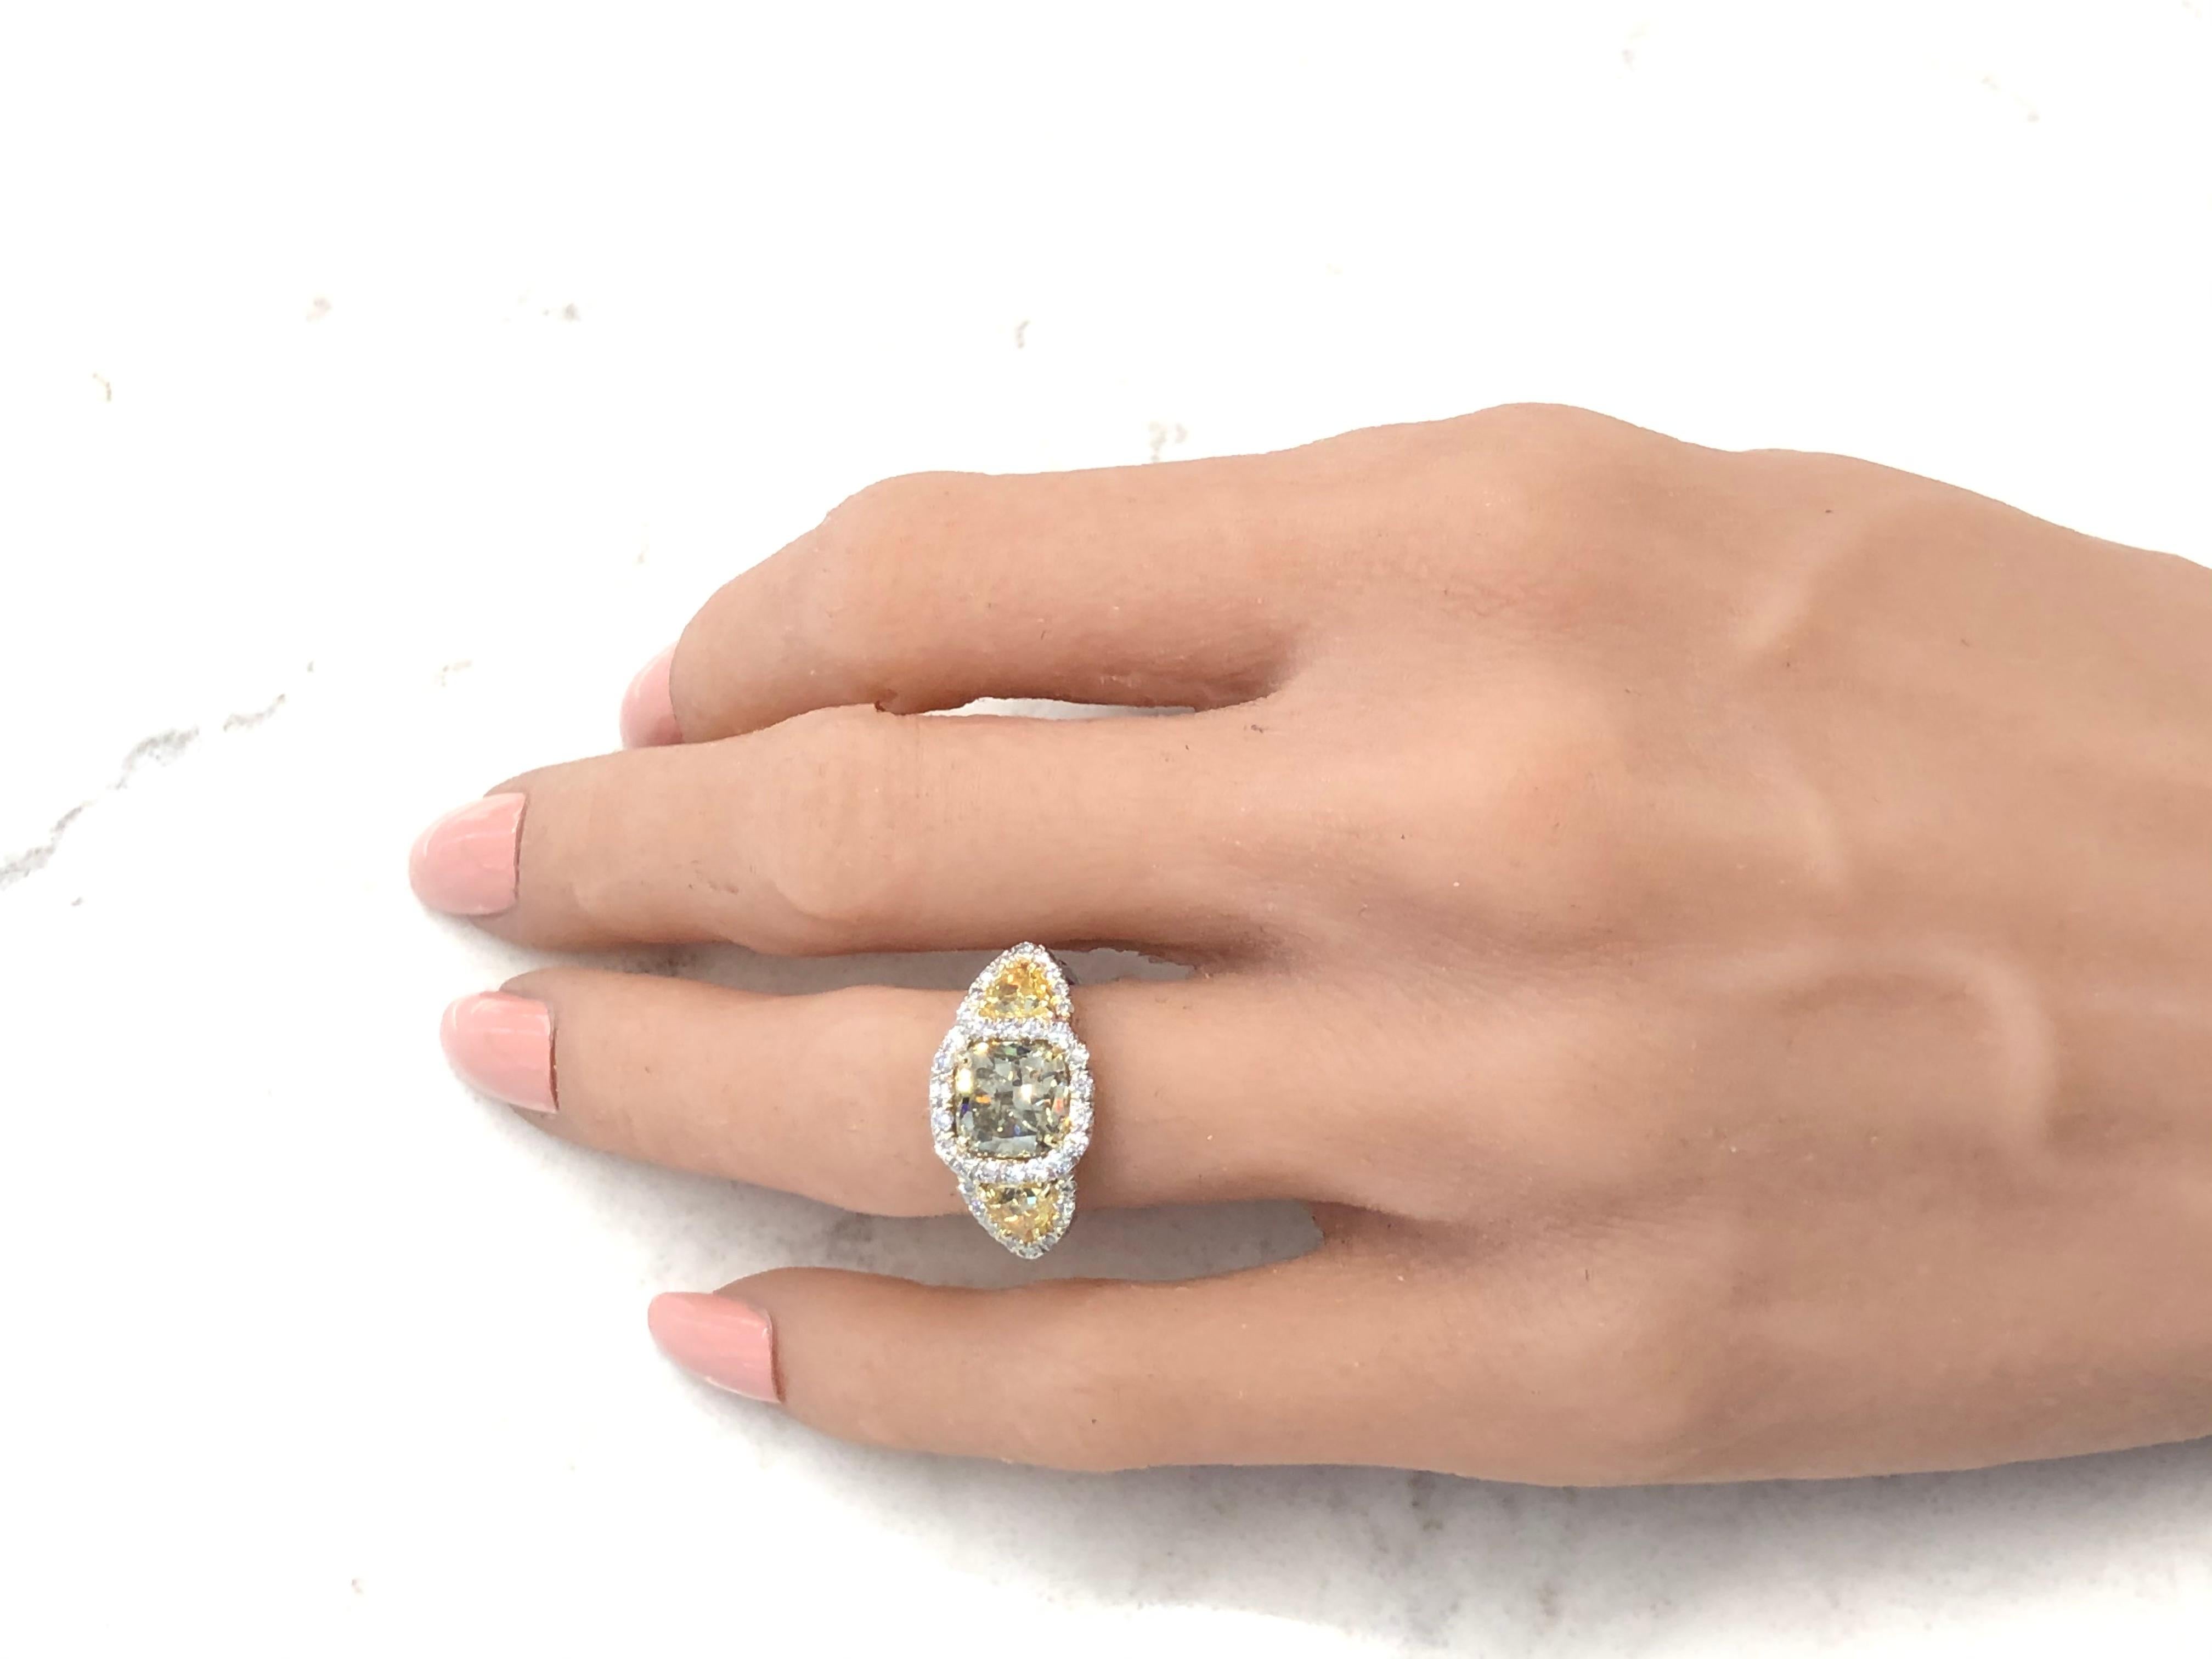 Feiern Sie Ihren Geburtstag oder Ihr Jubiläum stilvoll mit diesem auffälligen Ring mit mehreren Diamanten aus glänzend poliertem Platin. Im Mittelpunkt steht ein 3,10-Karat-Diamant im Kissenschliff mit bräunlich-grünlich-gelber Farbe und